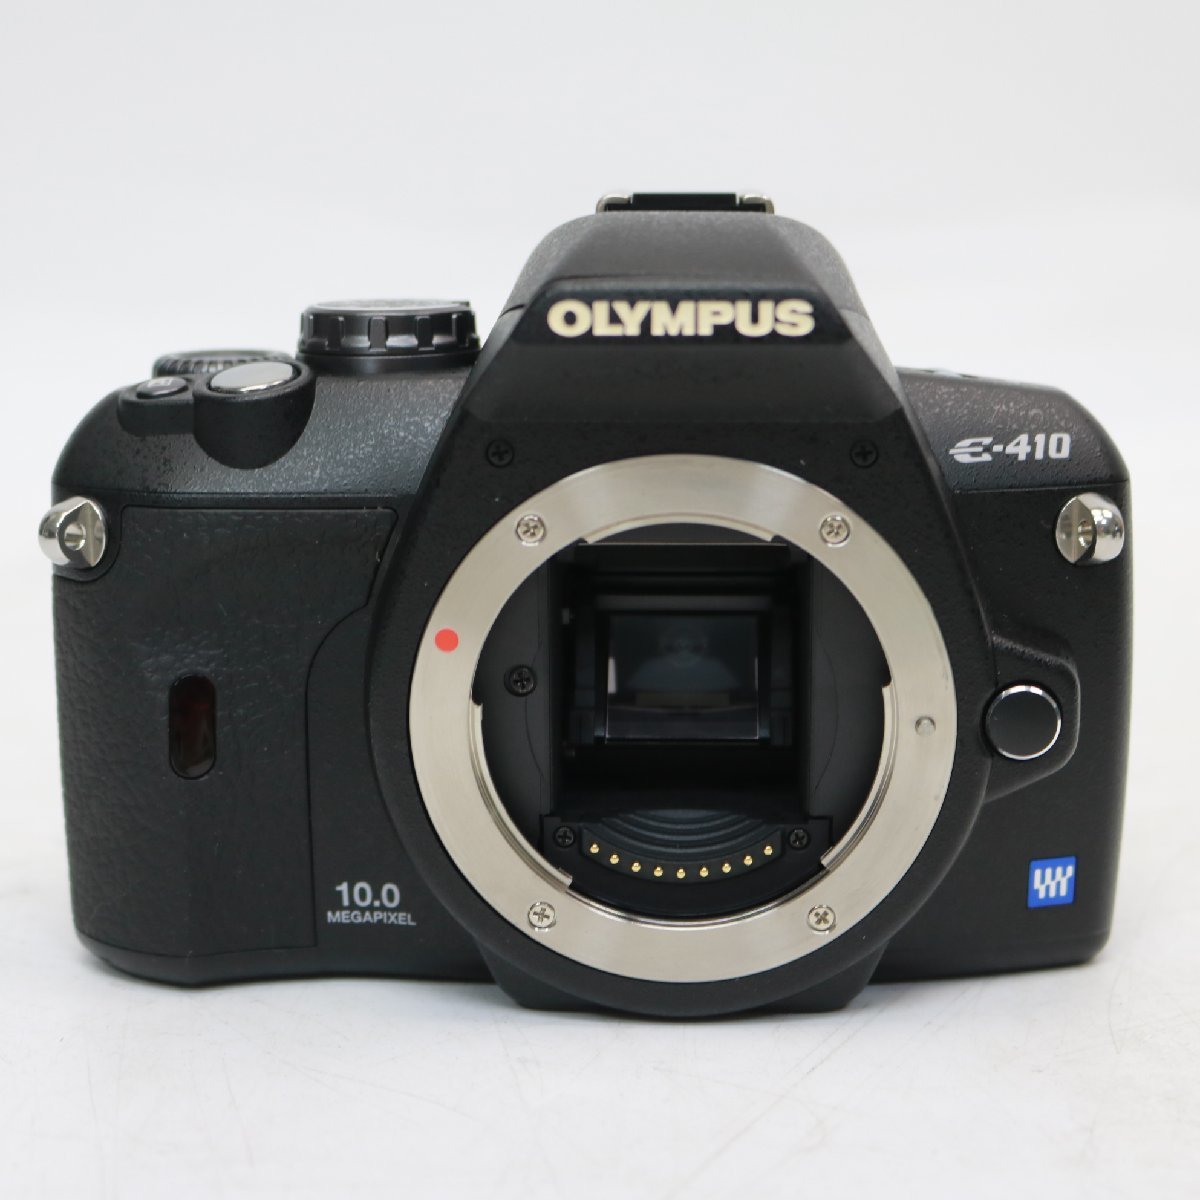 148)オリンパス OLYMPUS E-410 ダブルズームキット デジカメ レンズ 40-150mm F:4-5.6 14-42mm F:3.5-5.6 ジャンク品_画像2